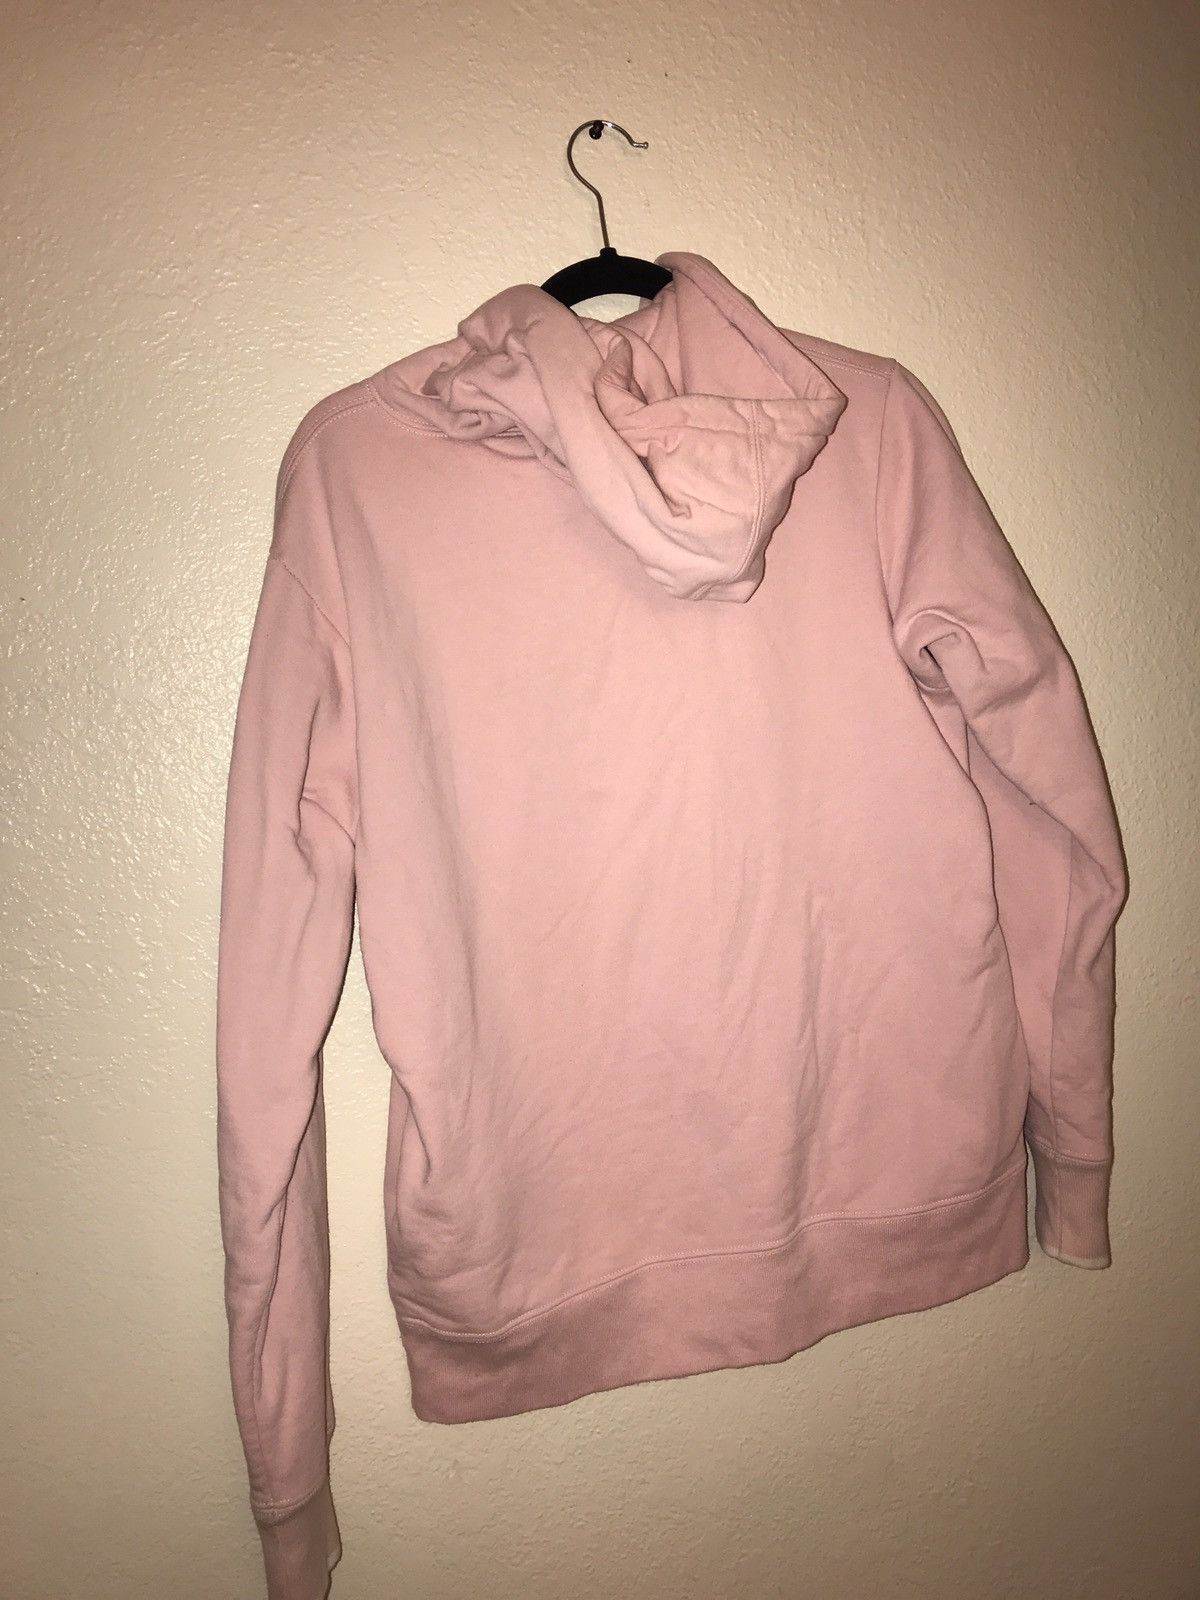 Supreme *LAST DROP* pink supreme hoodie Size US M / EU 48-50 / 2 - 3 Thumbnail